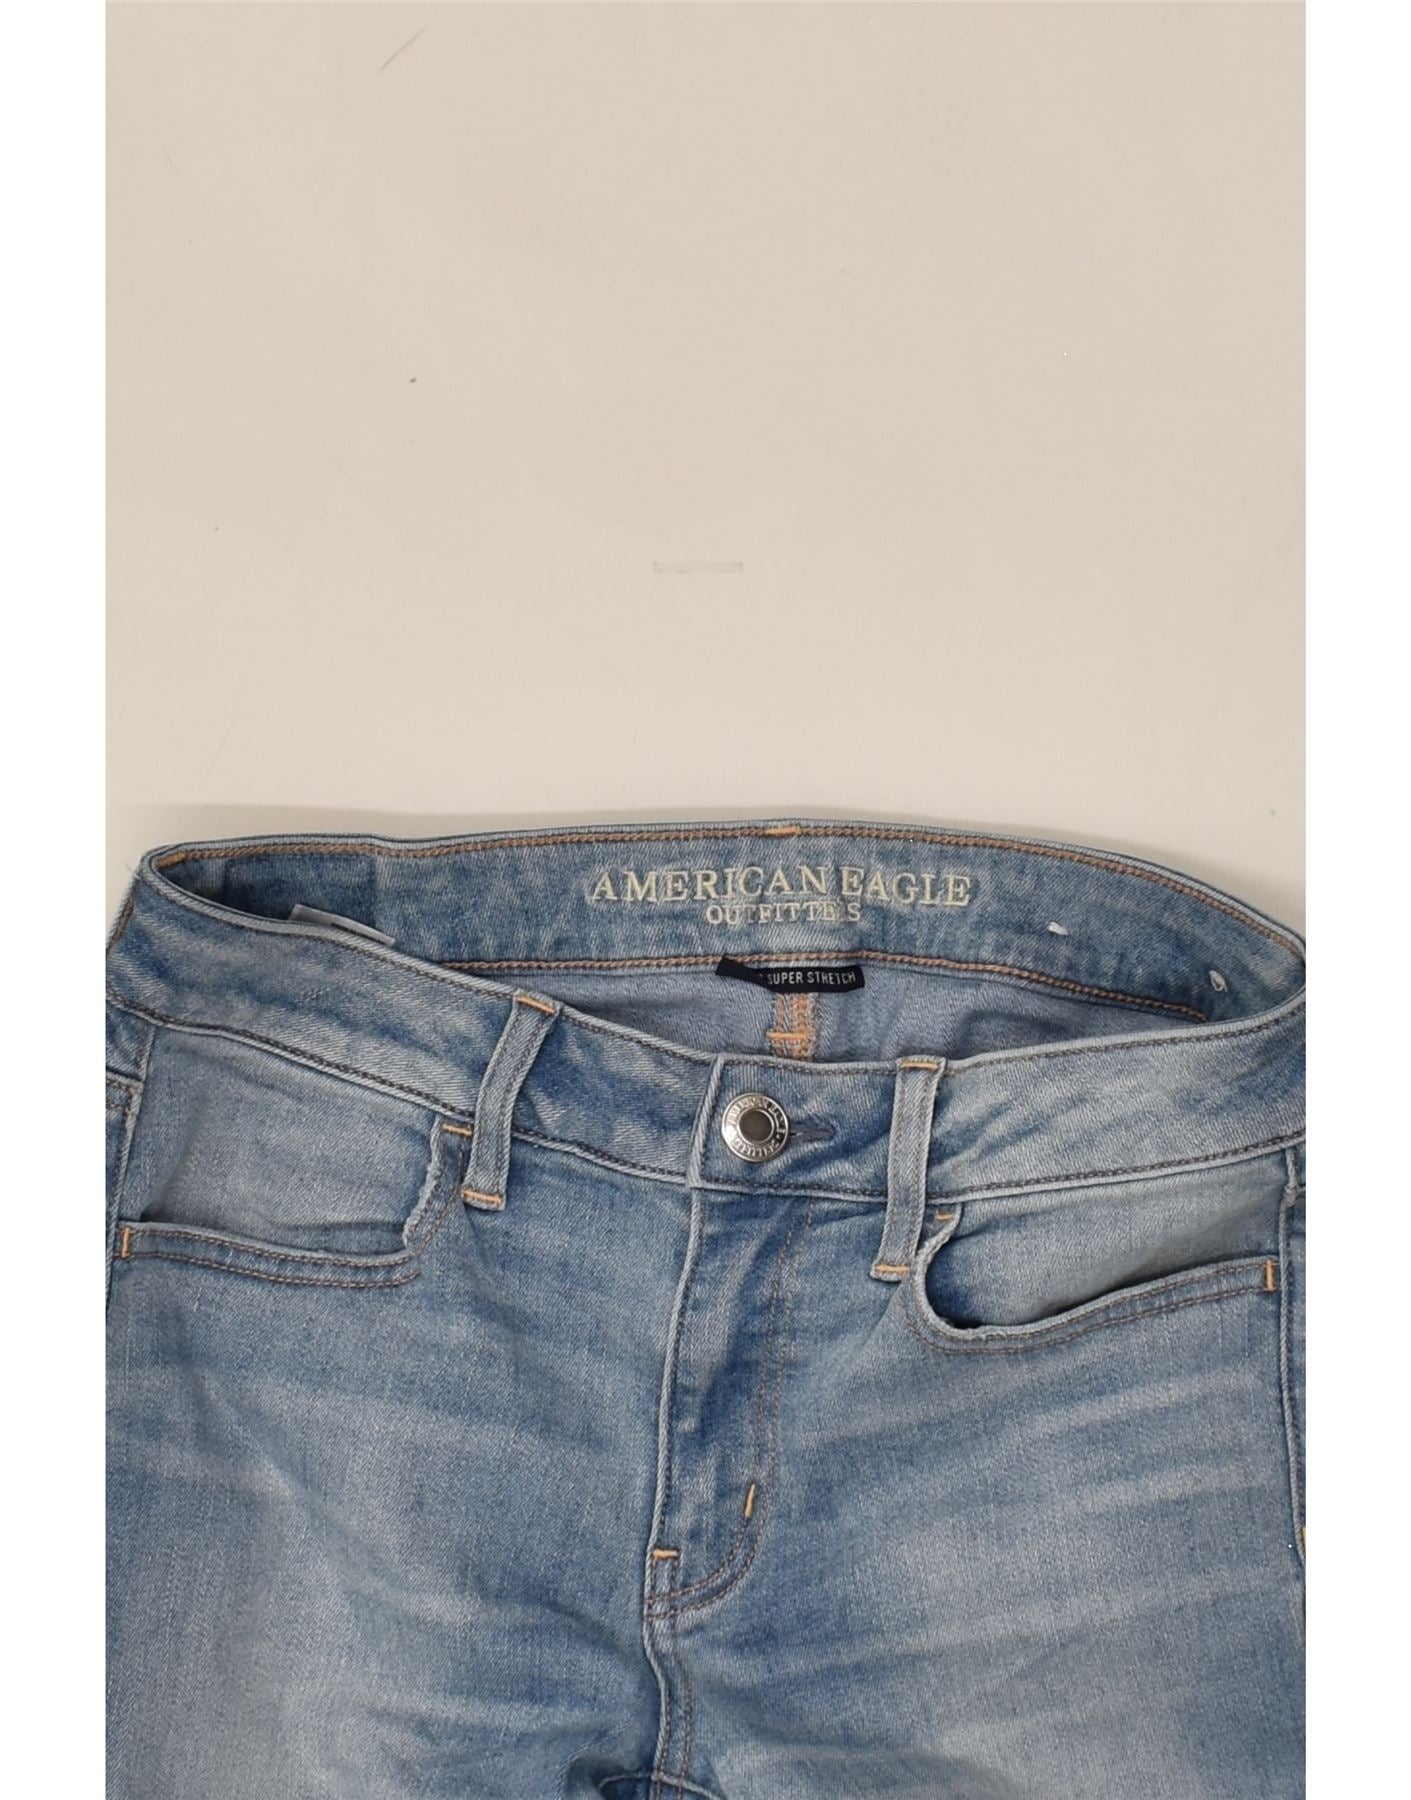 Buy American Eagle Jegging Jeans Online